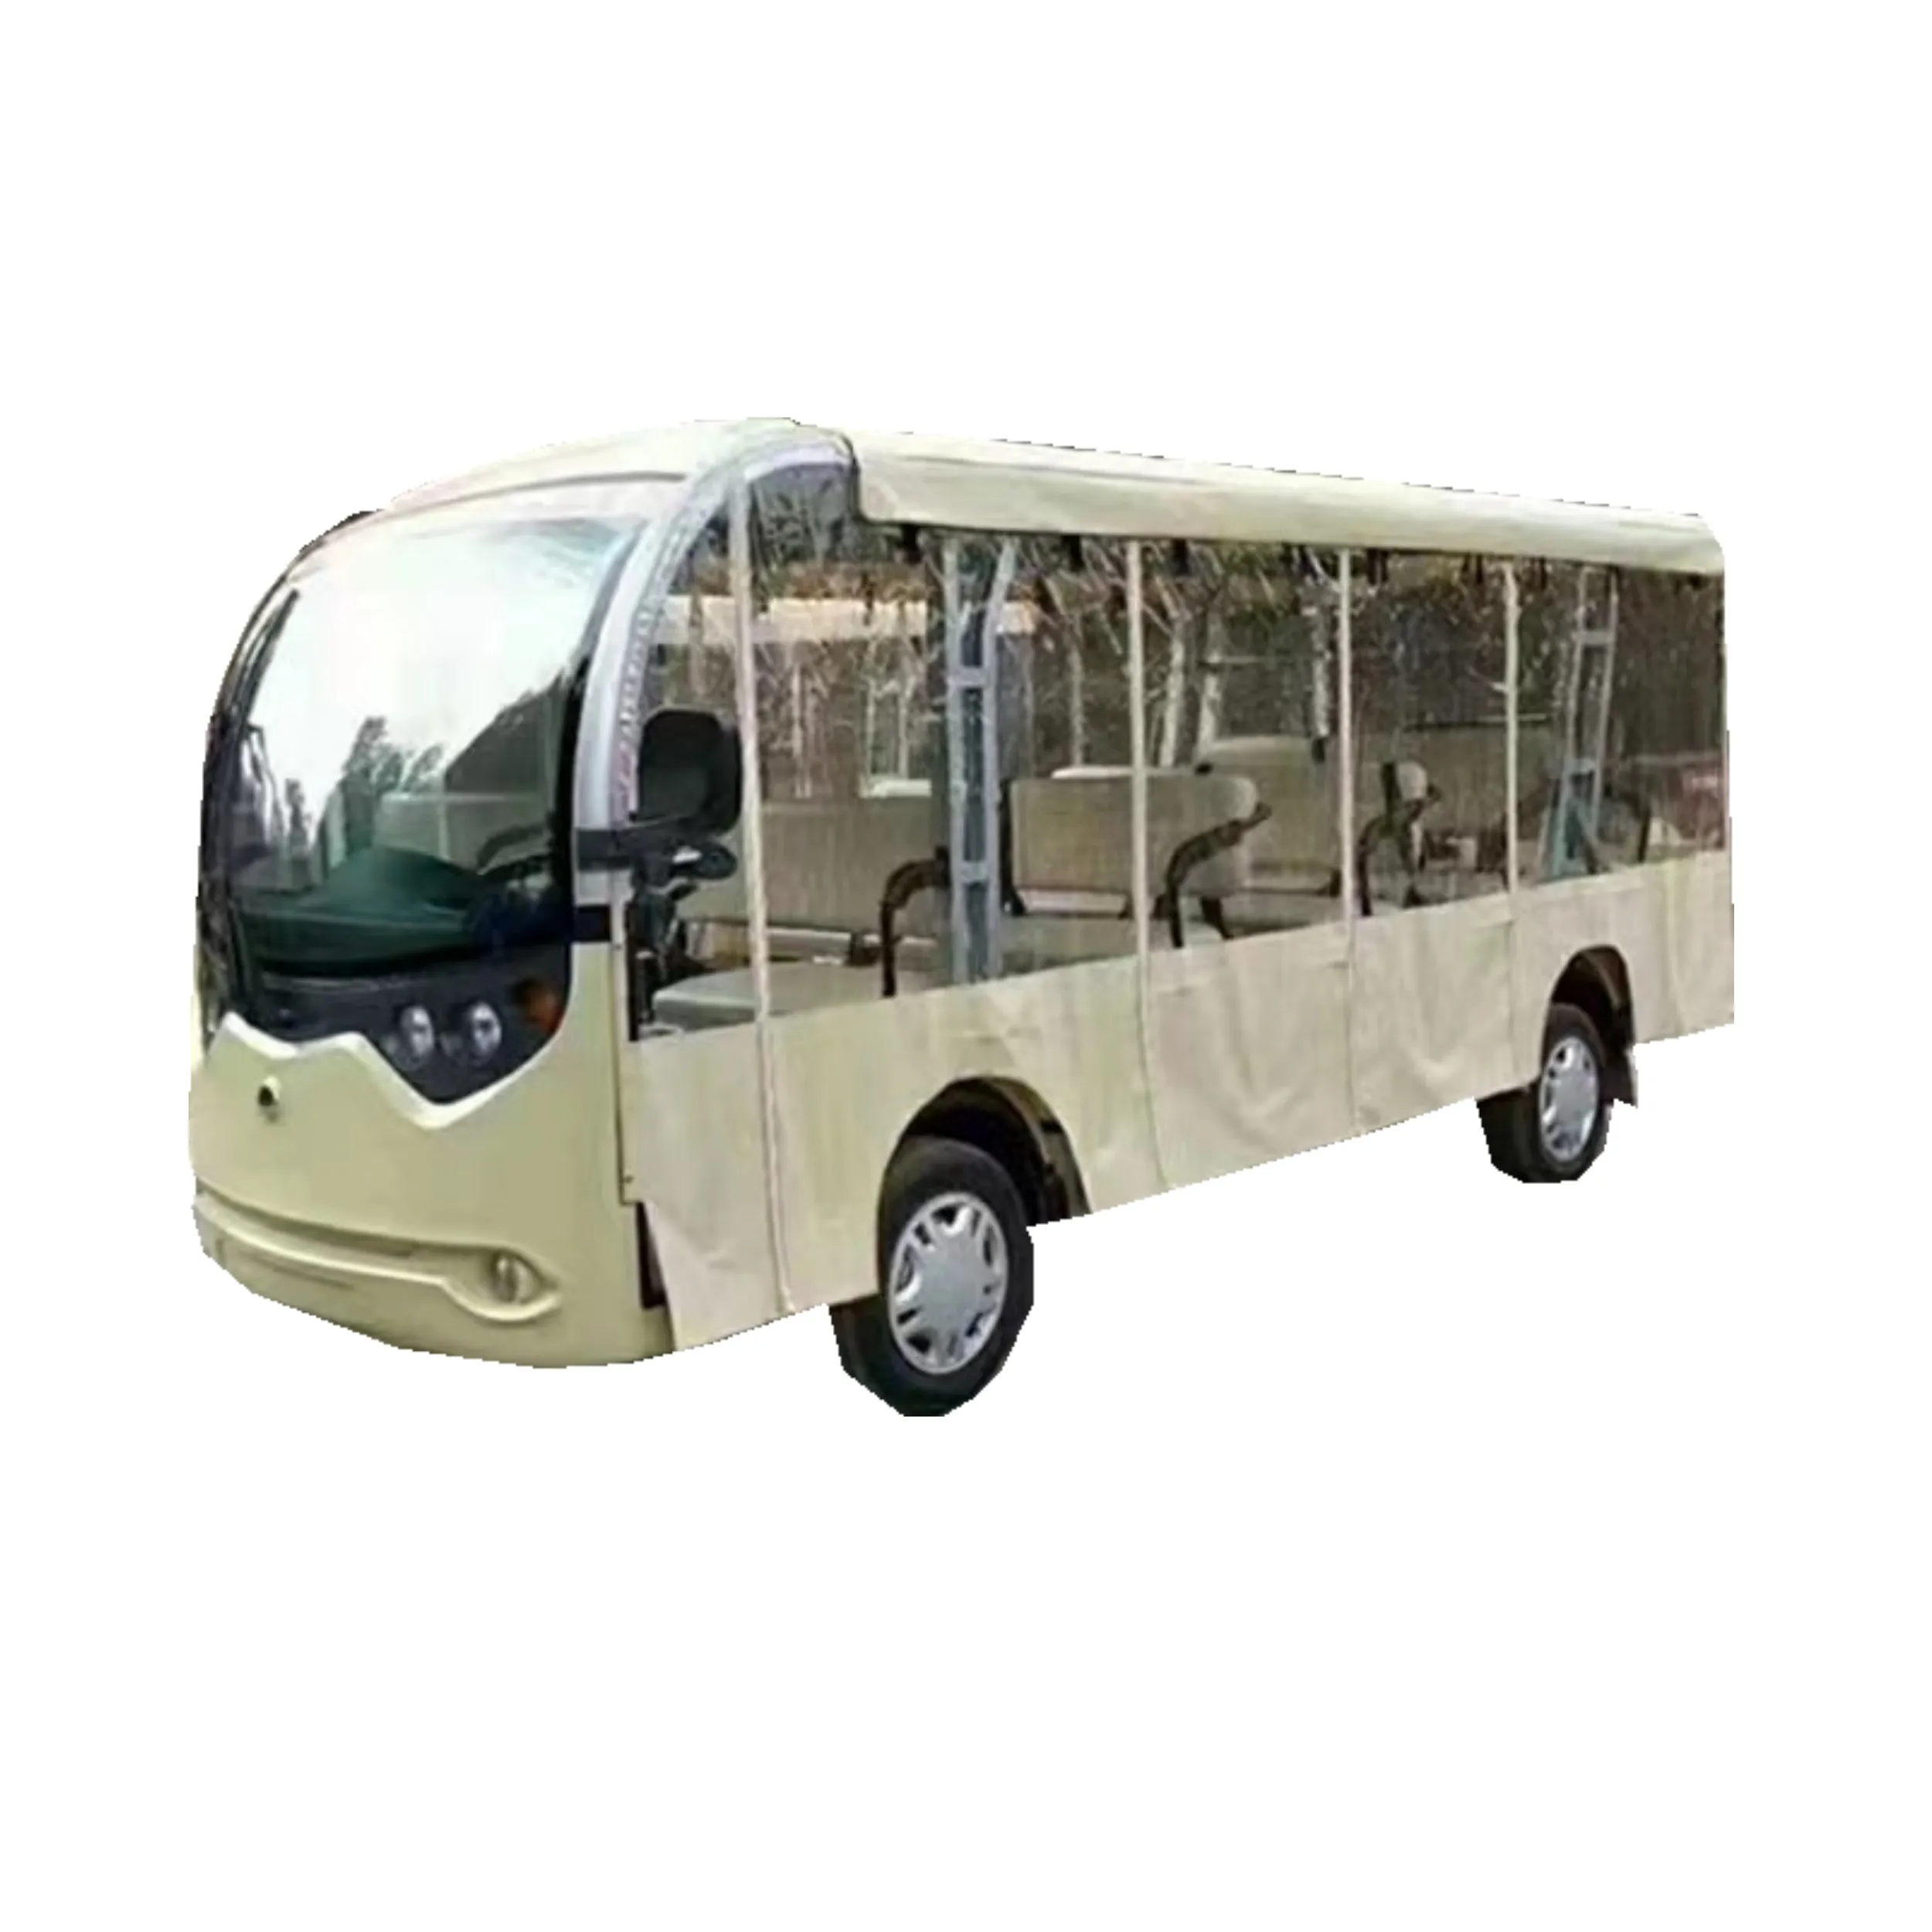 Nuevo diseño de alta calidad Street Legal Electric Tour Shuttle Bus 11 juegos de autobuses eléctricos turísticos